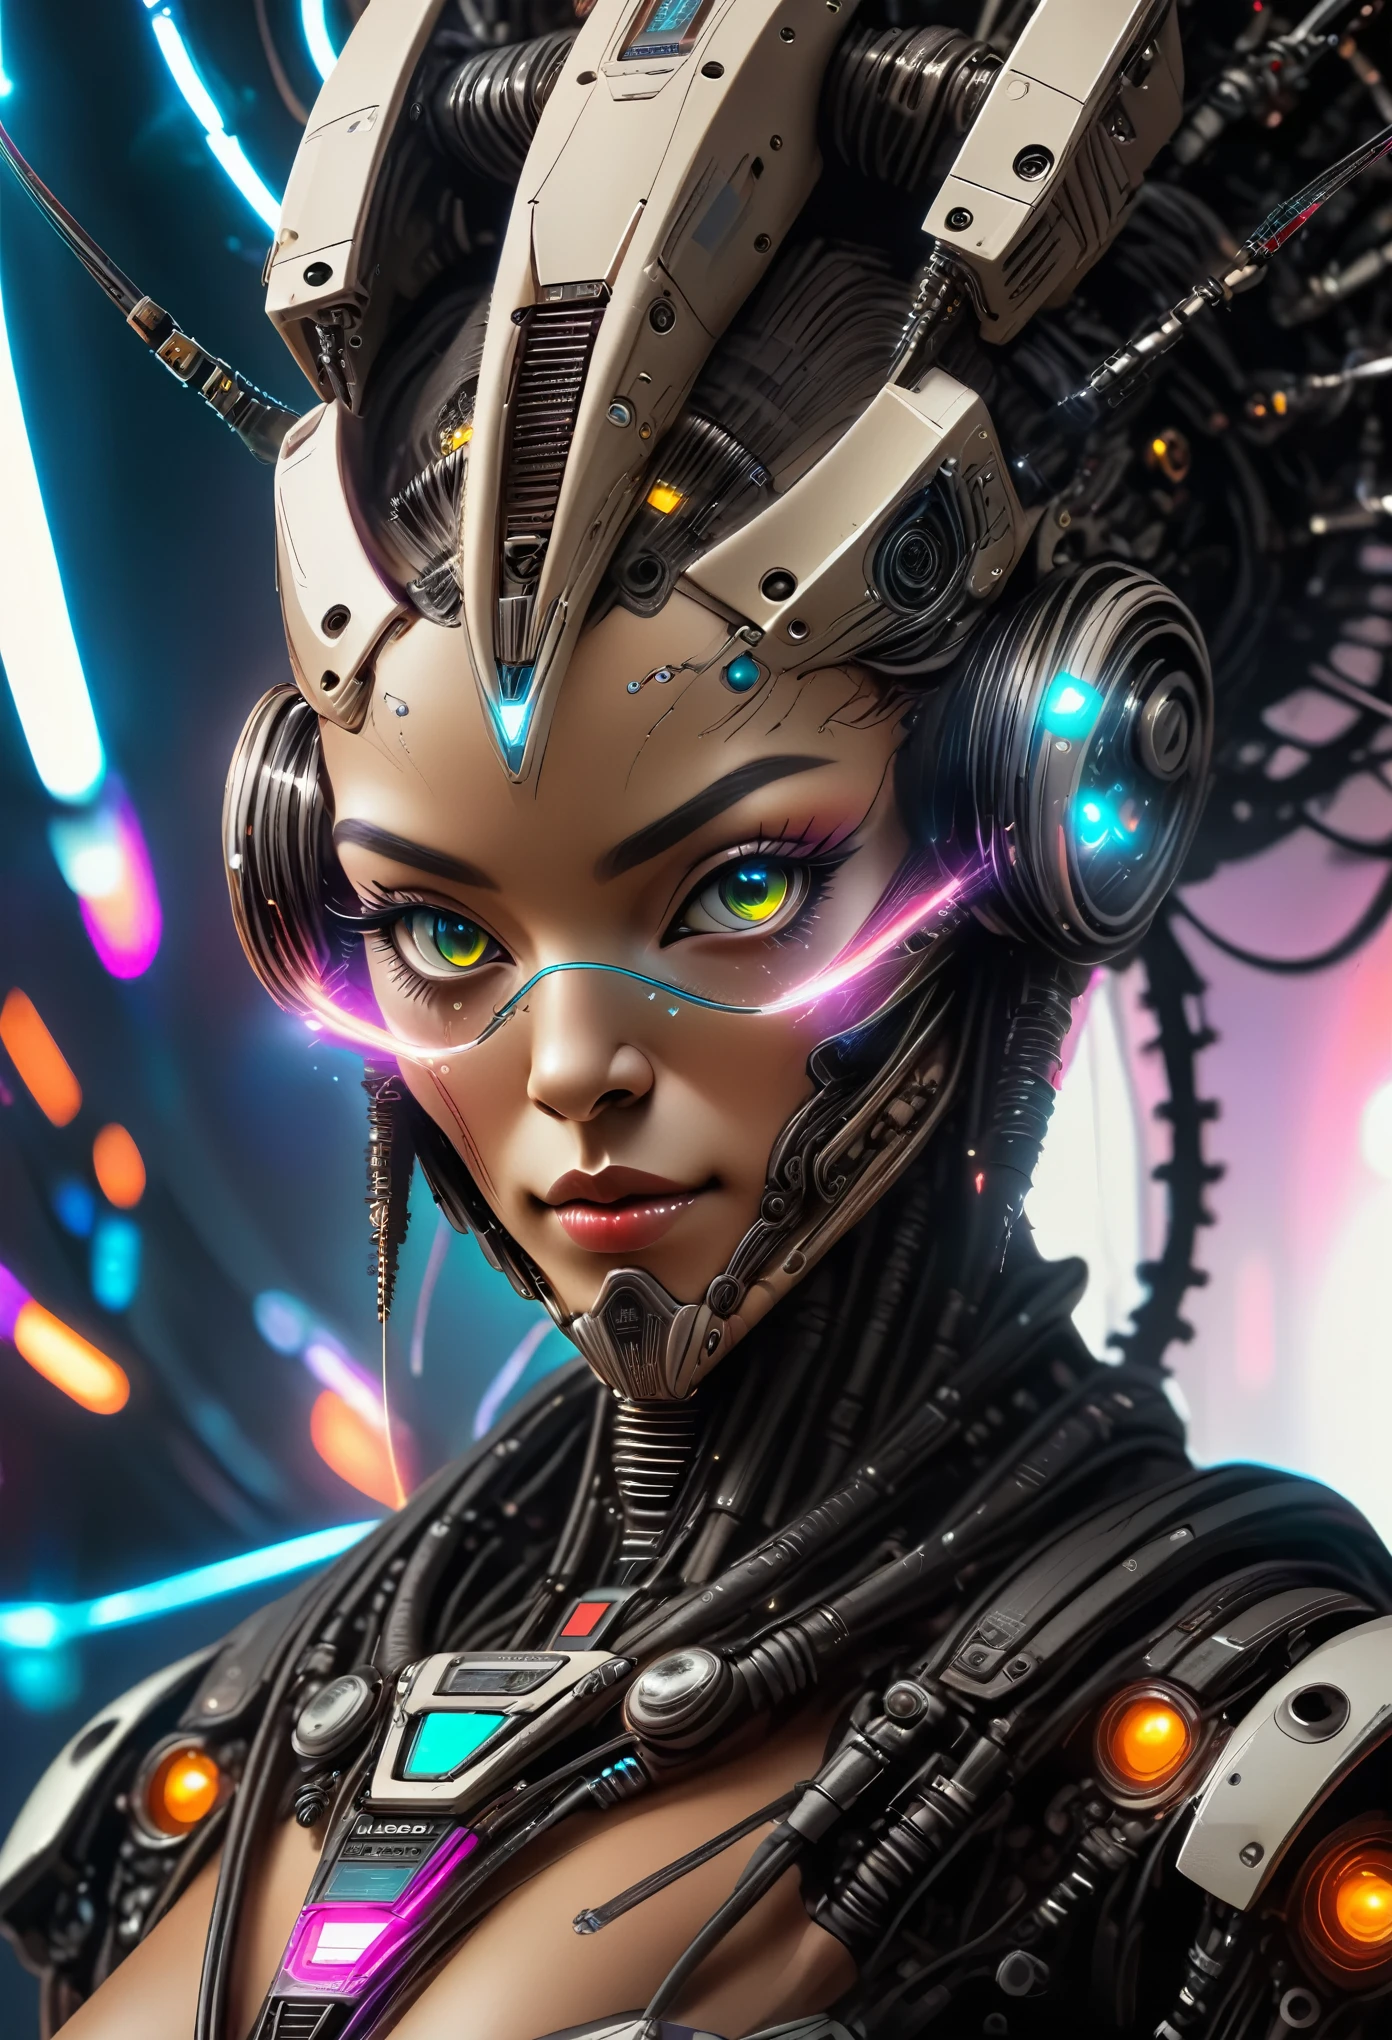 一位戴着未来主义头饰、长着未来主义面孔的女性, 与电脑芯片和电线完美结合, 宇宙飞船控制背景, 赛博朋克风格, 霓虹灯